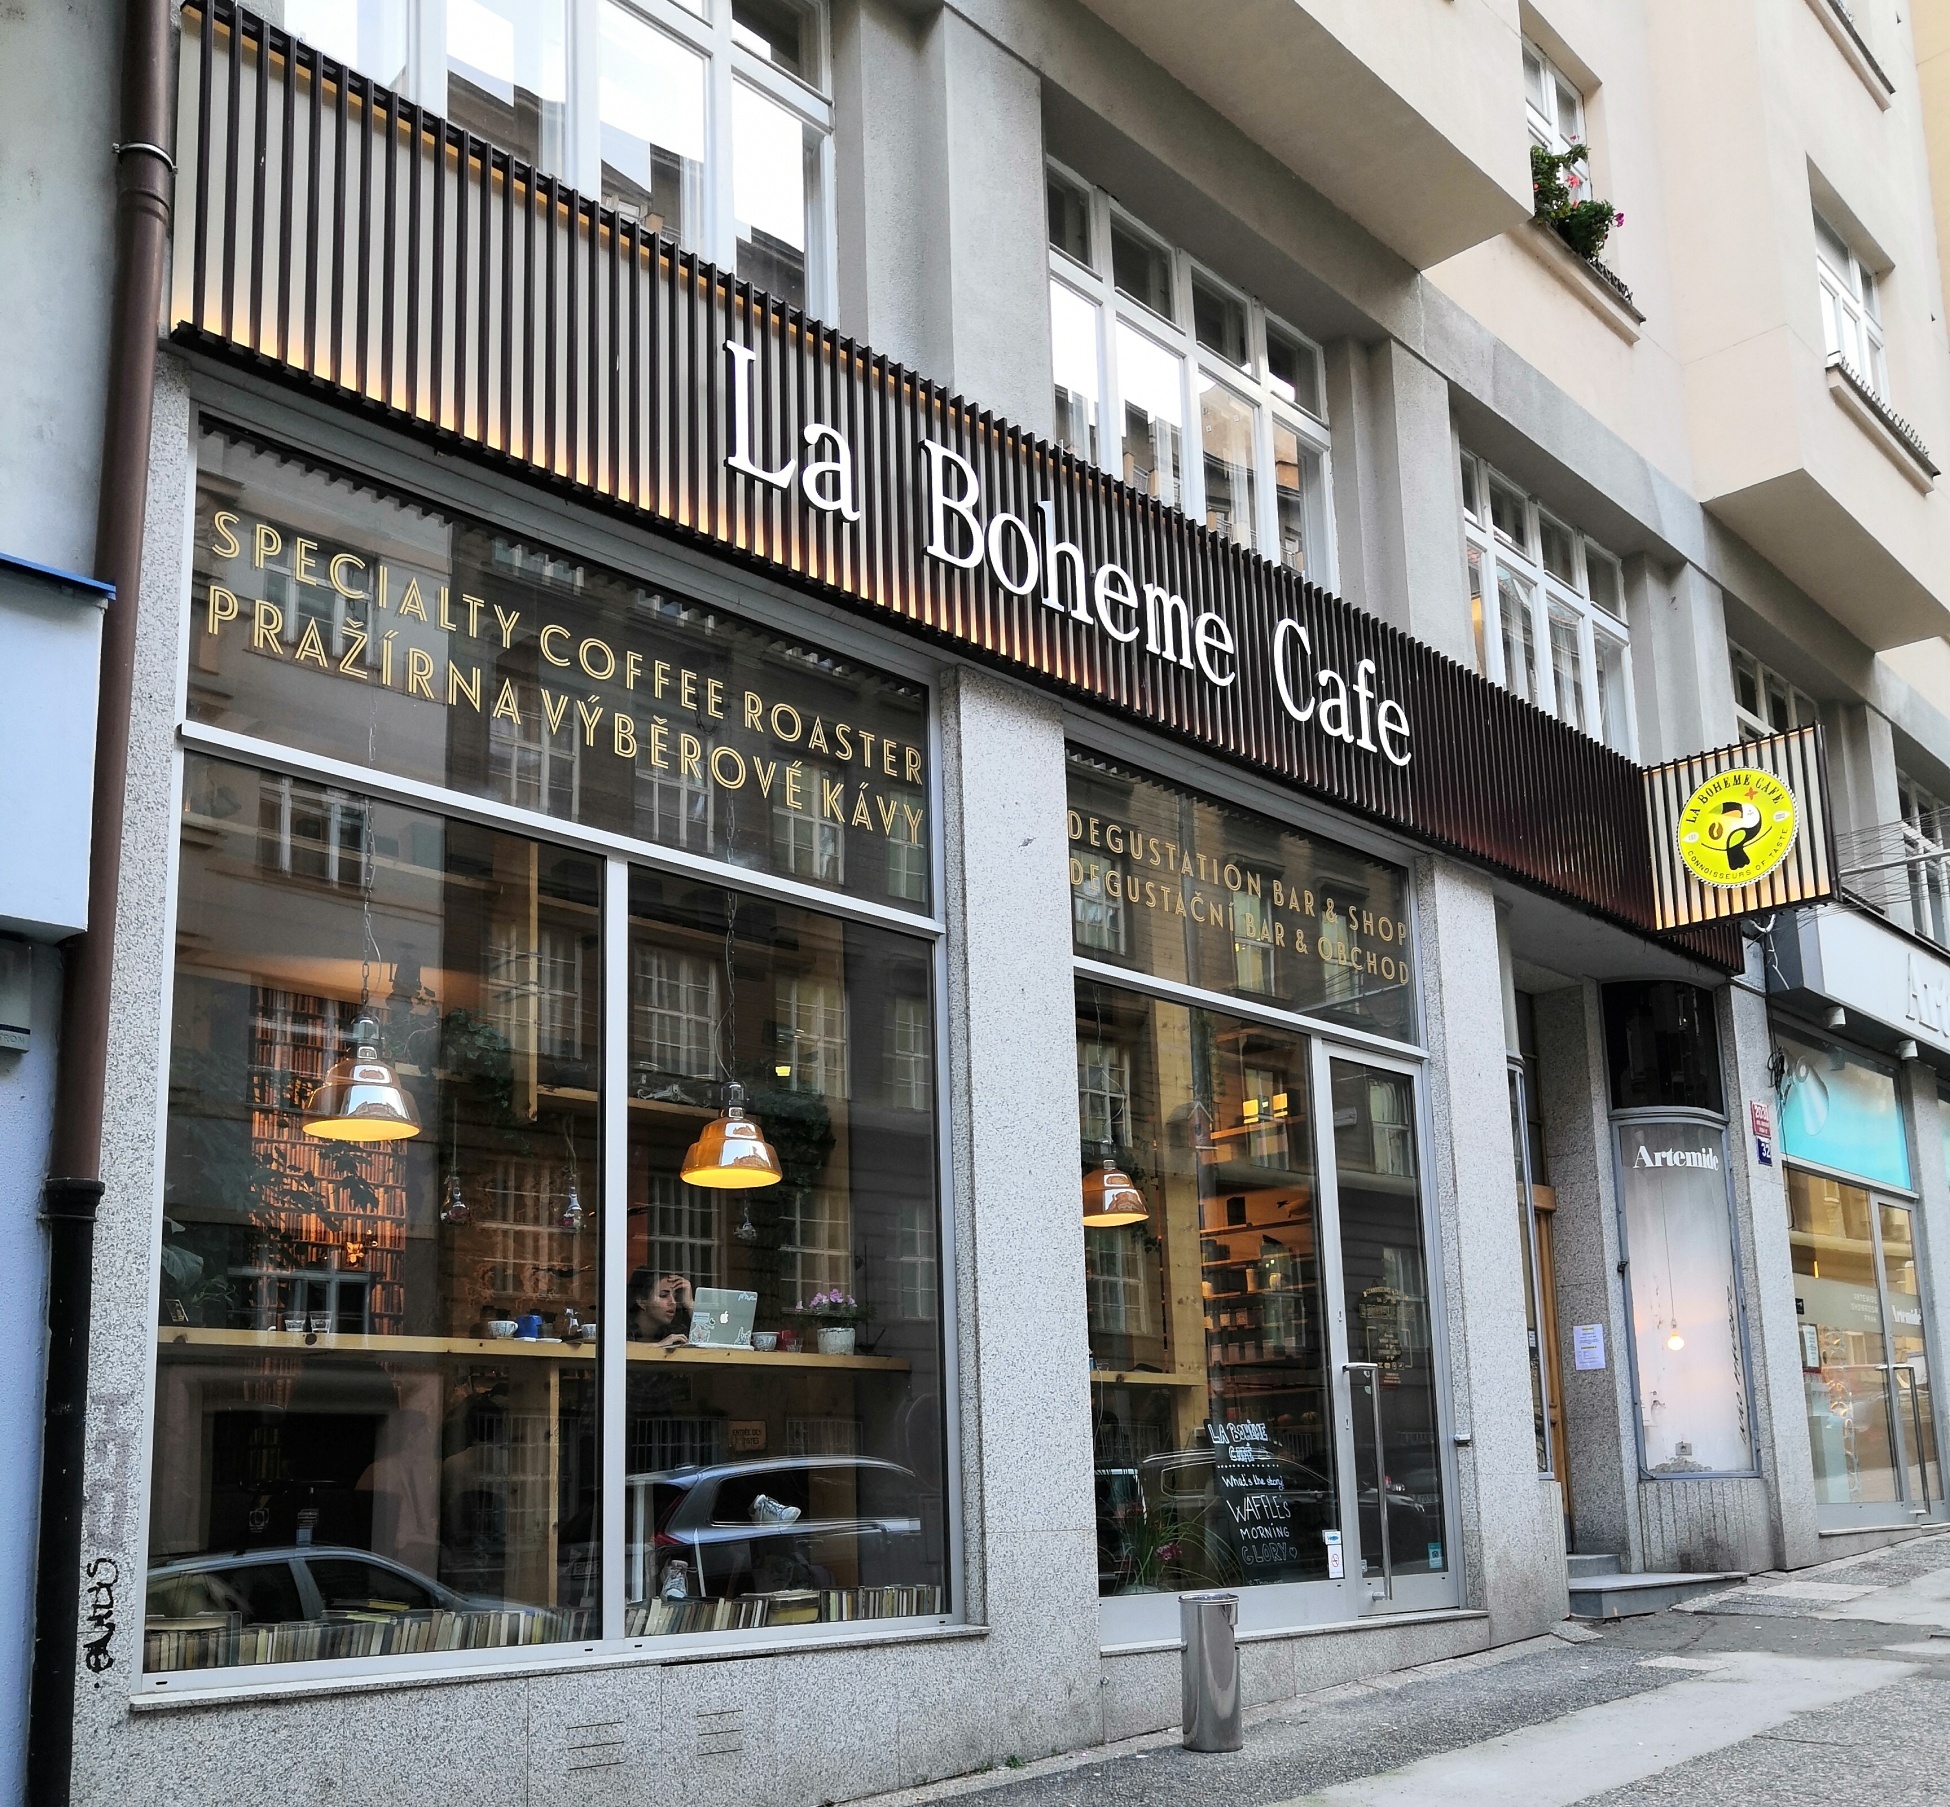 nejlepší kavárny, hodnocení kaváren, la boheme café